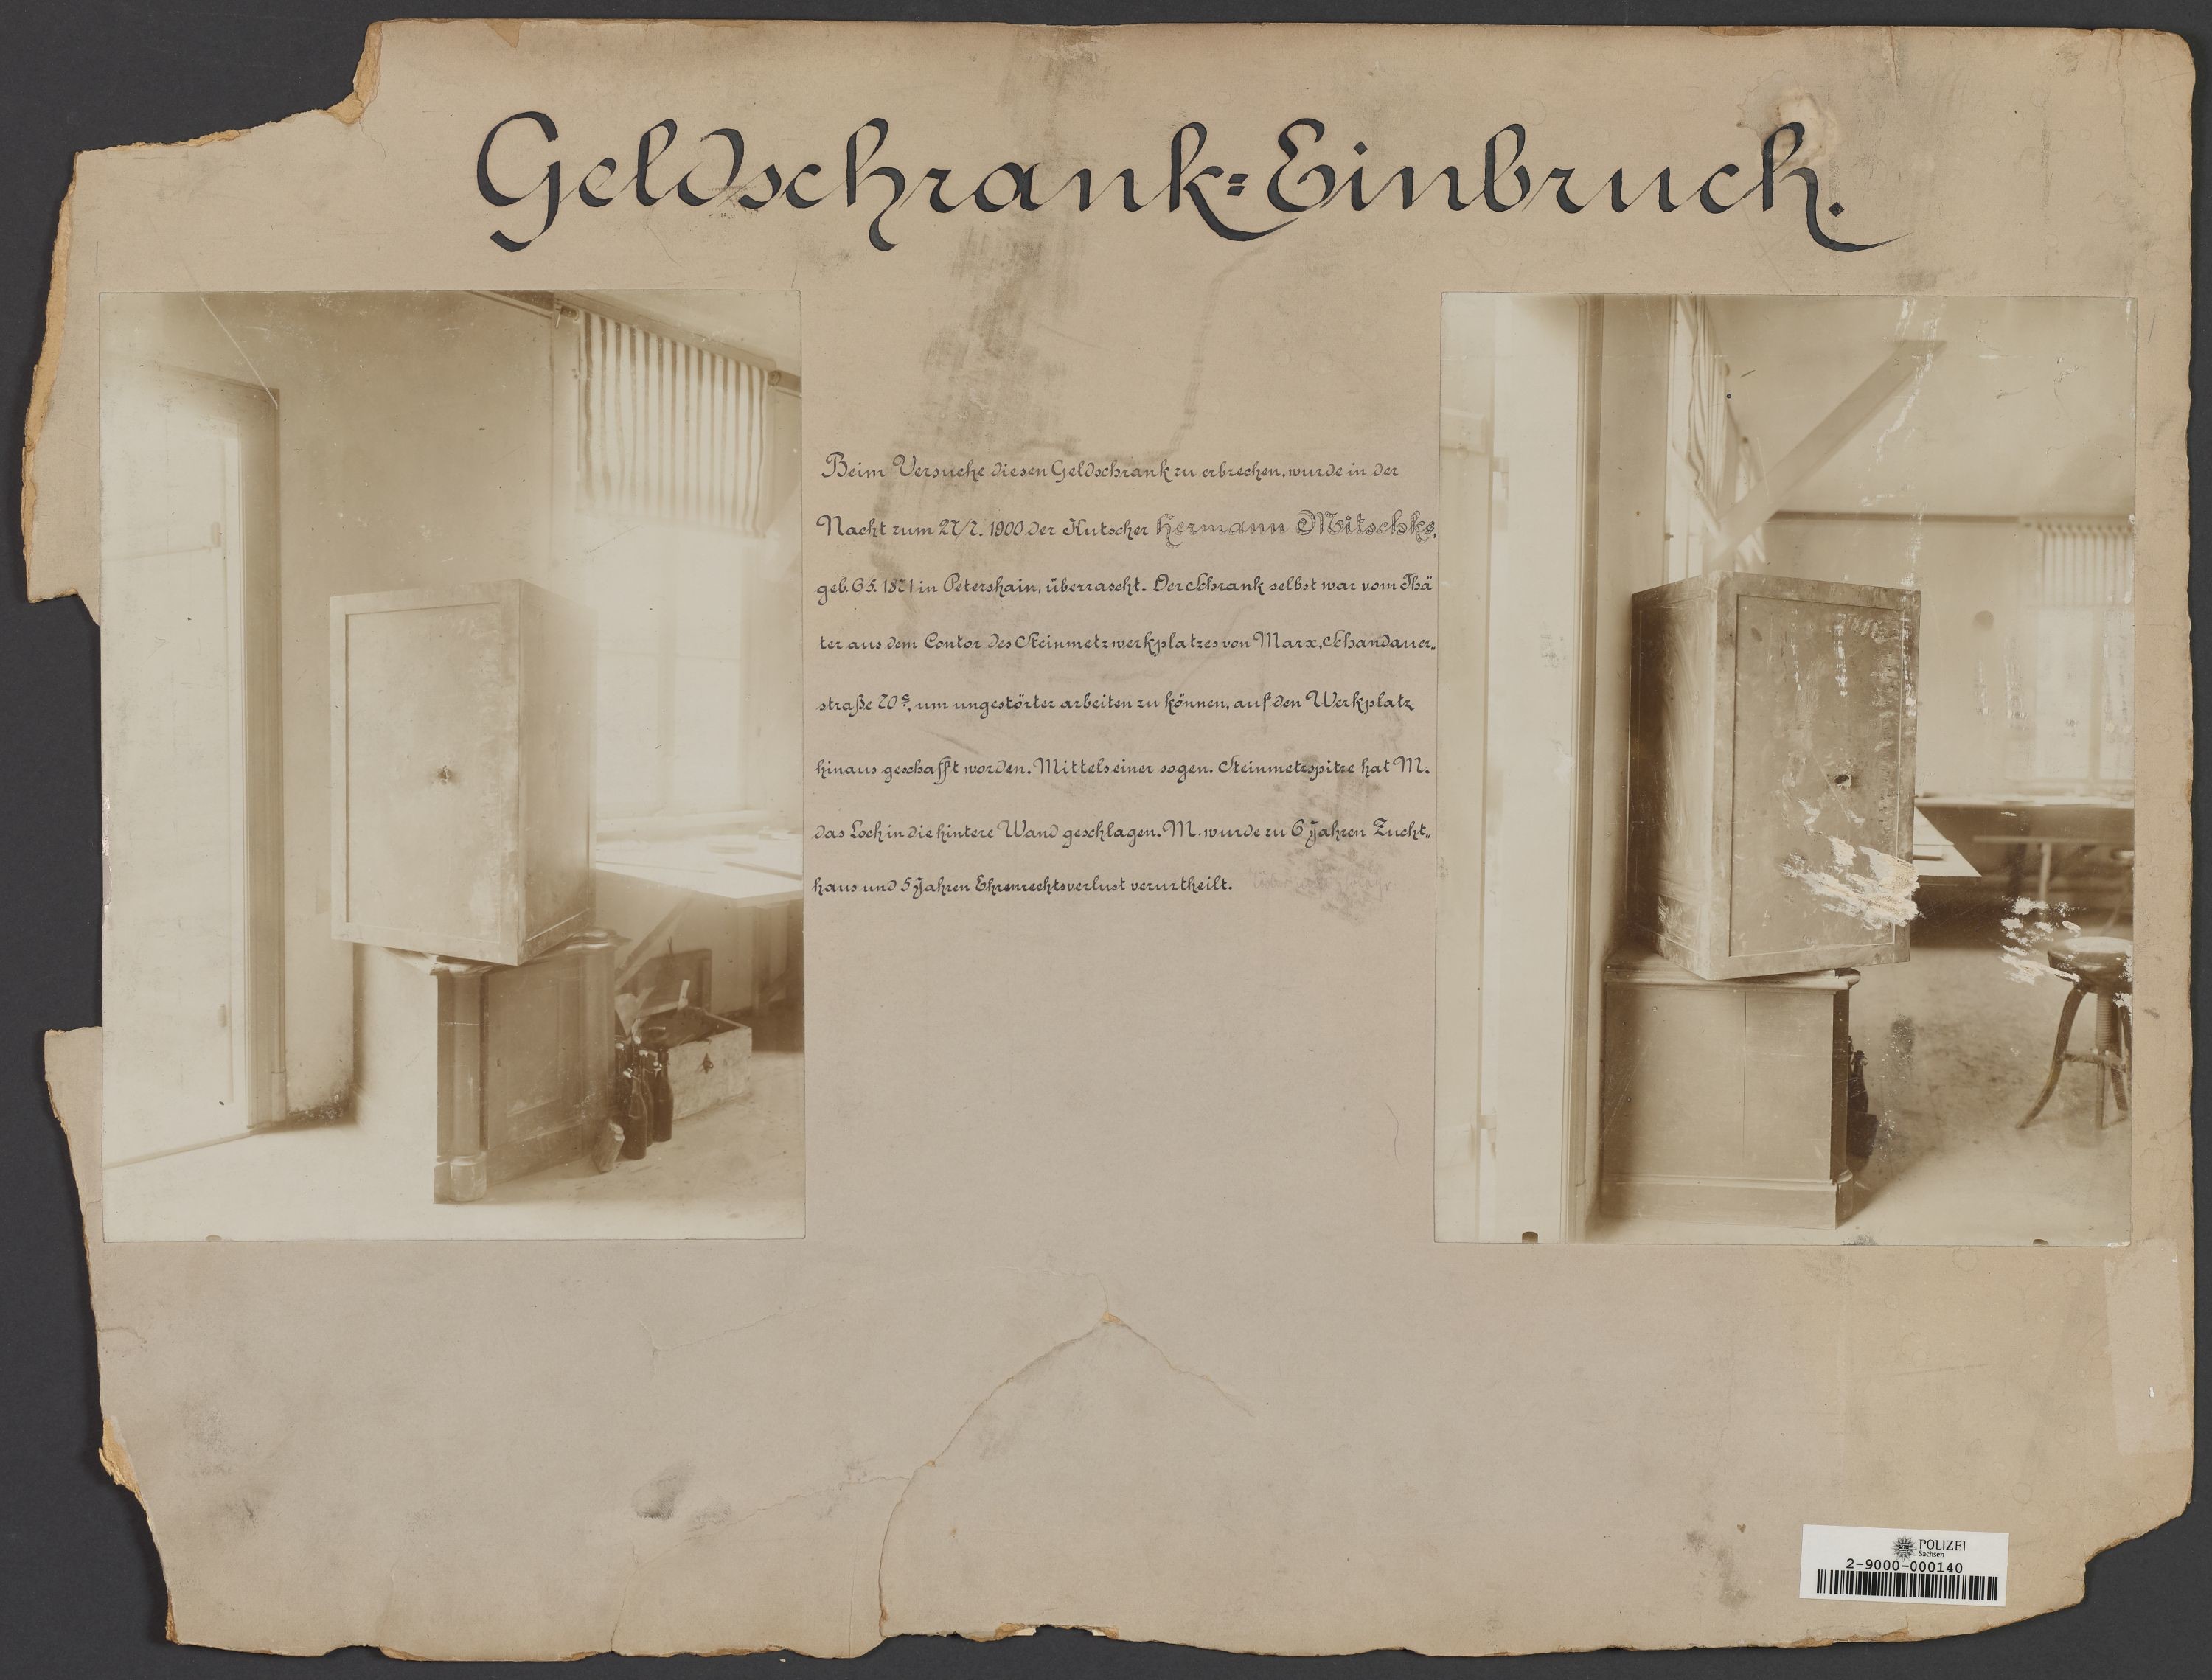 Lehrtafel mit Darstellungen von Geldschrankeinbruch in Peterhain und Urkundenfälschung von 1900 (Polizeidirektion Dresden RR-F)